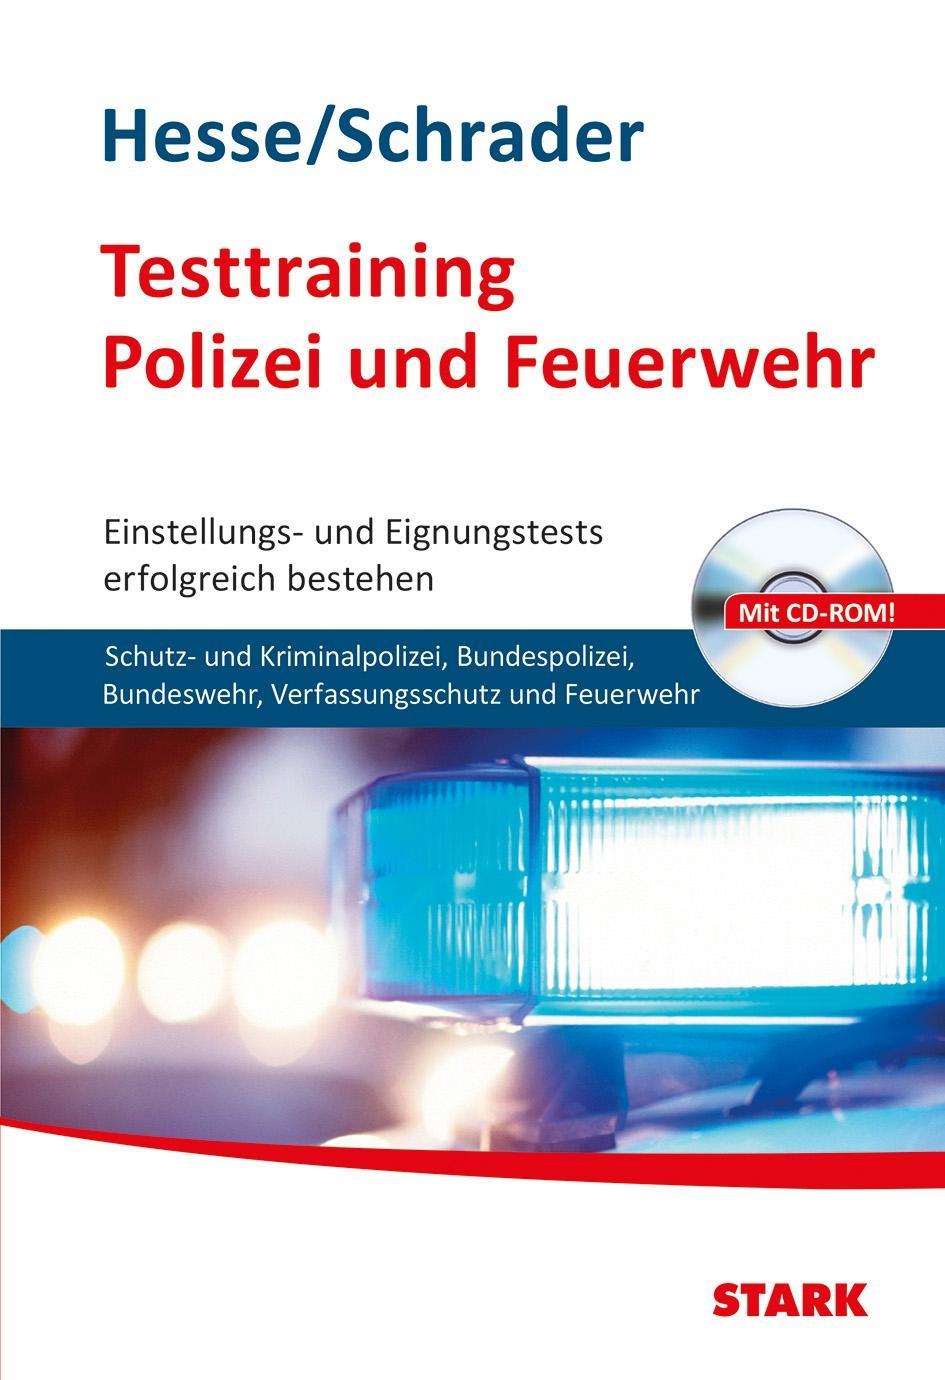 Hesse/Schrader: Testtraining Polizei und Feuerwehr Jürgen Hesse - Bild 1 von 1